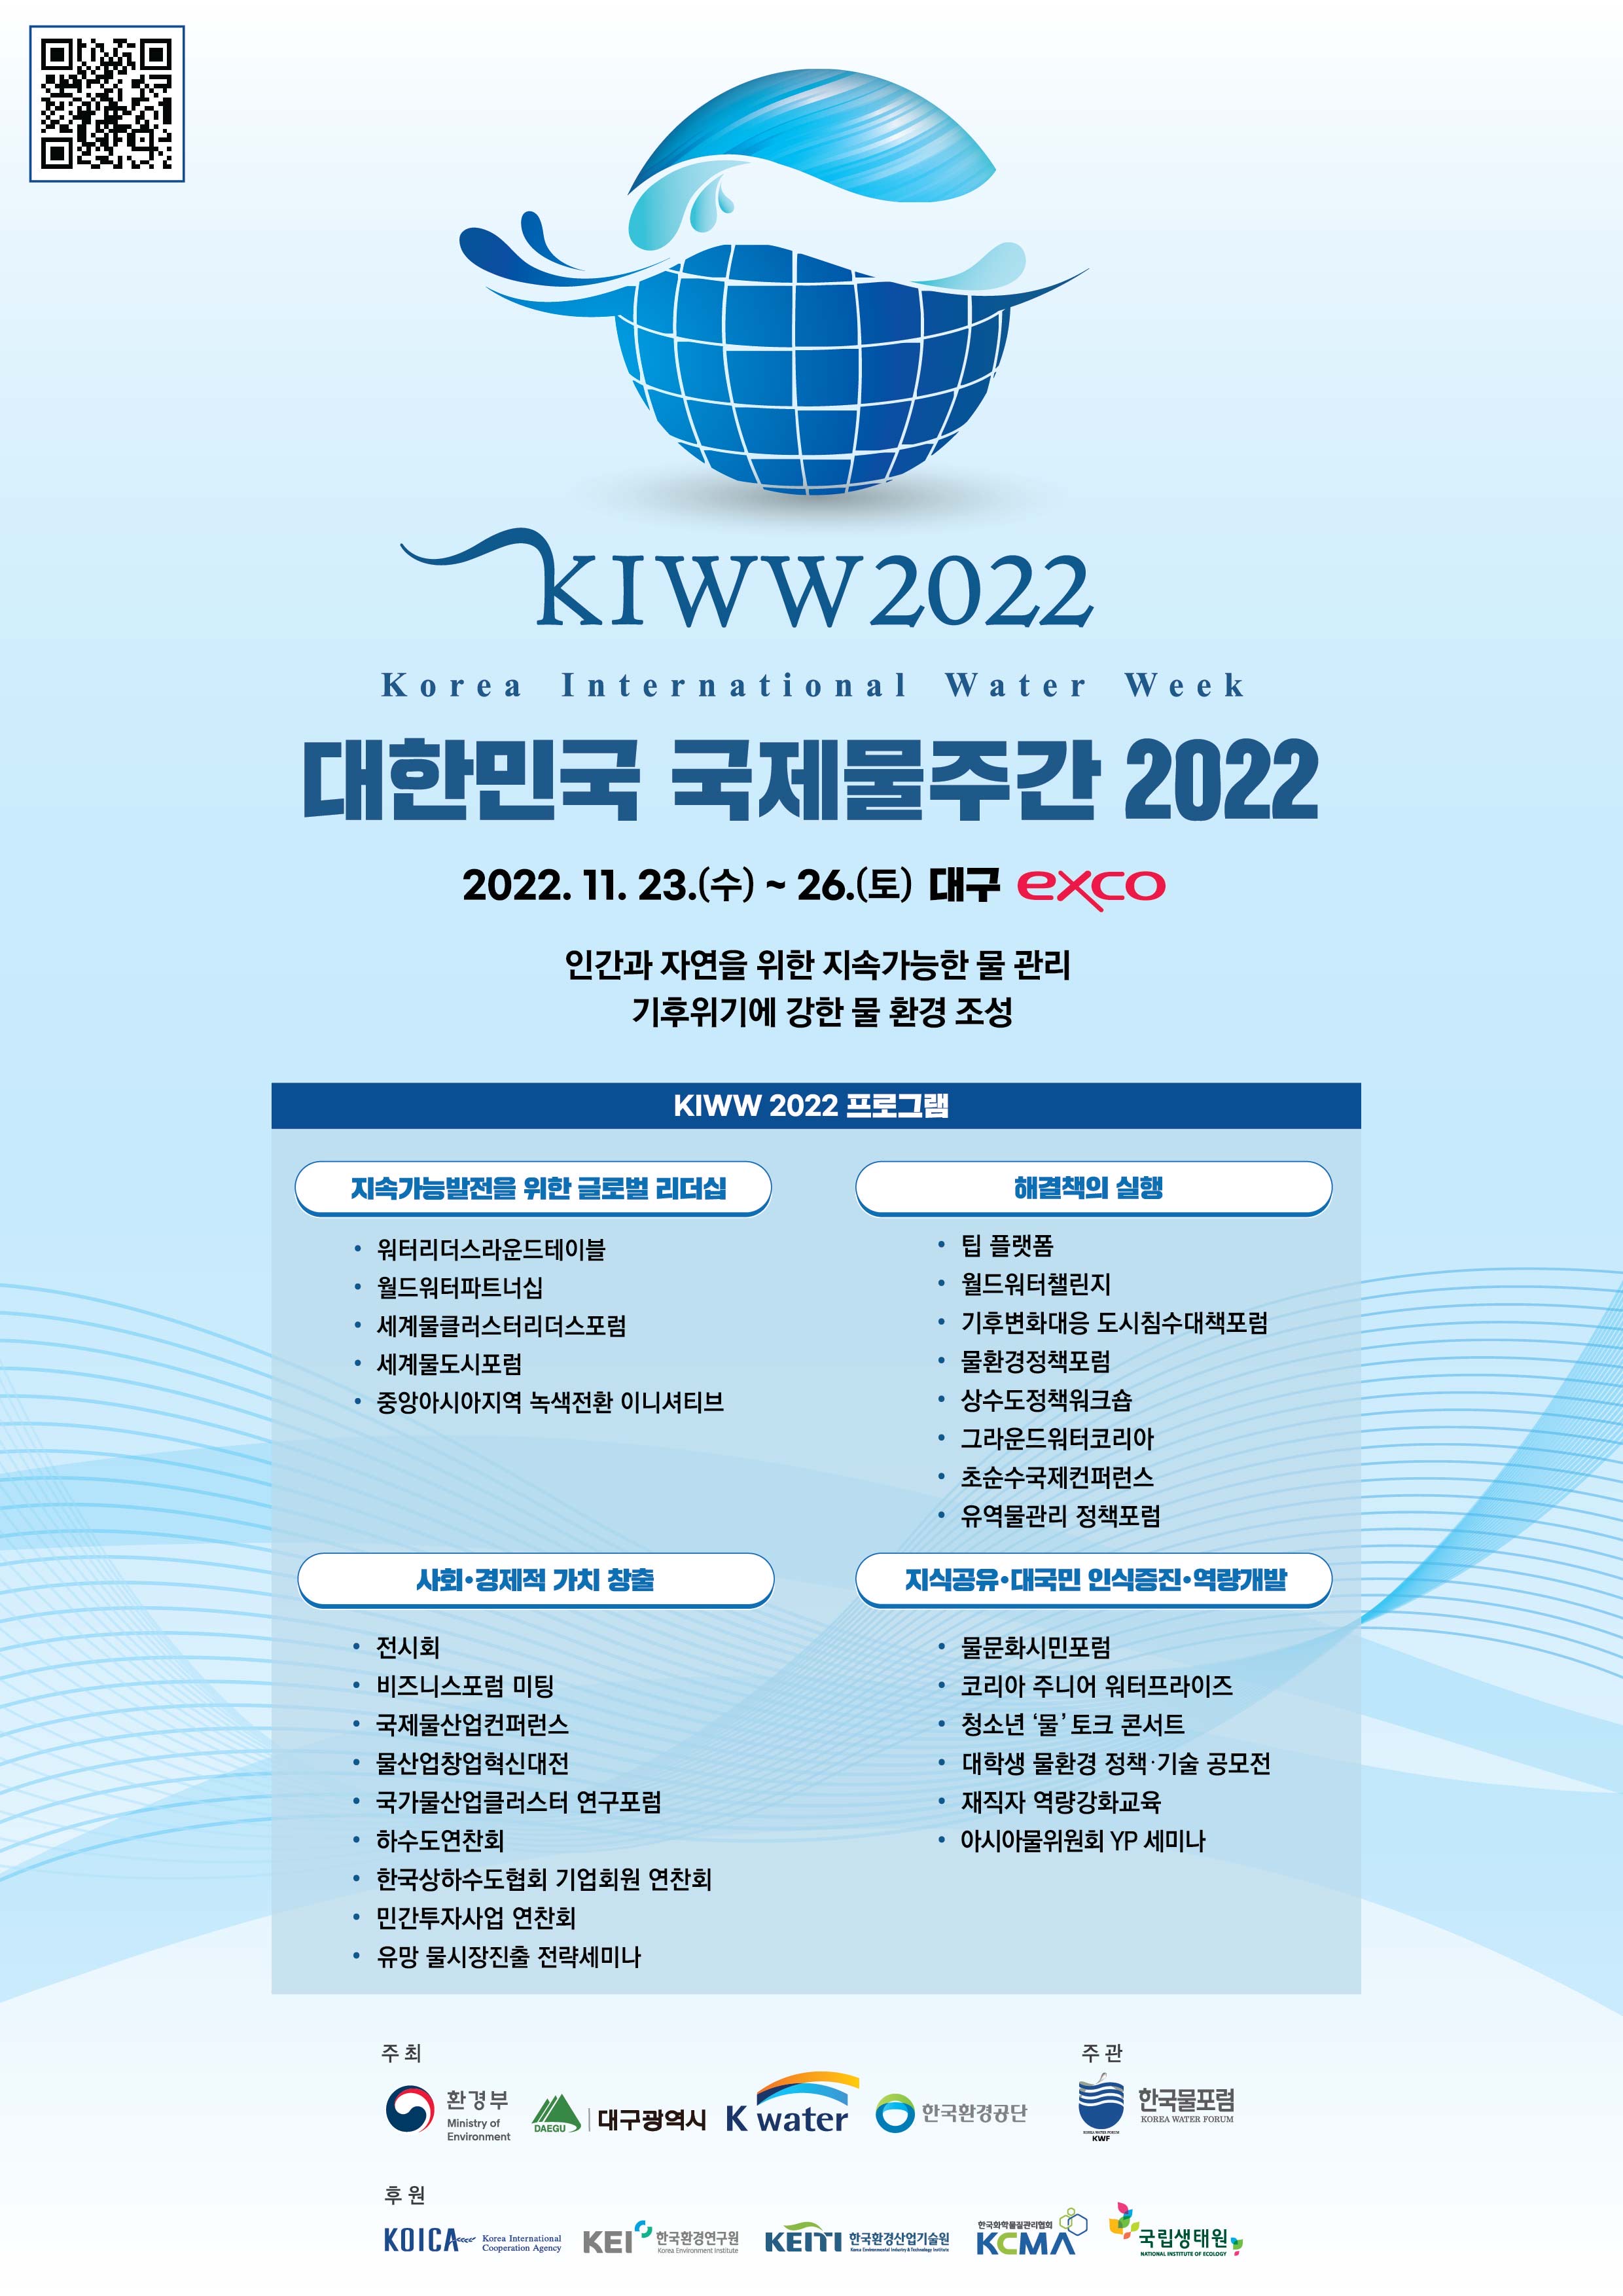 KIWW2022 Korea International Water Week 대한민국 국제물주간 2022 2022. 11. 23.(수) ~ 26.(토) 대구 exco 인간과 자연을 위한 지속가능한 물 관리 기후위기에 강한 물 환경 조성 KIWW 2022 프로그램 지속가능발전을 위한 글로벌 리더십 - 워터리더스라운드테이블 - 월드워터파트너십 - 세계물클러스터리더스포럼 - 세계물도시포럼 - 중앙아시아지역 녹색전환 이니셔티브 해결책의 실행 - 팁 플랫폼 - 월드워터챌린지 - 기후변화대응 도시침수대책포럼 - 물환경정책포럼 - 상수도정책워크숍 - 그라운드워터코리아 - 초순수국제컨퍼런스 - 유역물관리 정책포럼 사회·경제적 가치 창출 - 전시회 - 비즈니스포럼 미팅 - 국제물산업컨퍼런스 - 물산업창업혁신대전 - 국가물산업클러스터 연구포럼 - 하수도연찬회 - 한국상하수도협회 기업회원 연찬회 - 민간투자사업 연찬회 - 유망 물시장진출 전략세미나 지식공유·대국민 인식증진·역량개발 - 물문화시민포럼 - 코리아 주니어 워터프라이즈 - 청소년 물 토크 콘서트 - 대학생 물환경 정책·기술 공모전 - 재직자 역량강화교육 - 아시아물위원회 YP 세미나 주최 환경부 대구광역시 K water 한국환경공단 주관 한국물포럼 후원 KOICA KEI한국환경연구원 KEITI한국환경산업기술원 KCMA 국립생태원